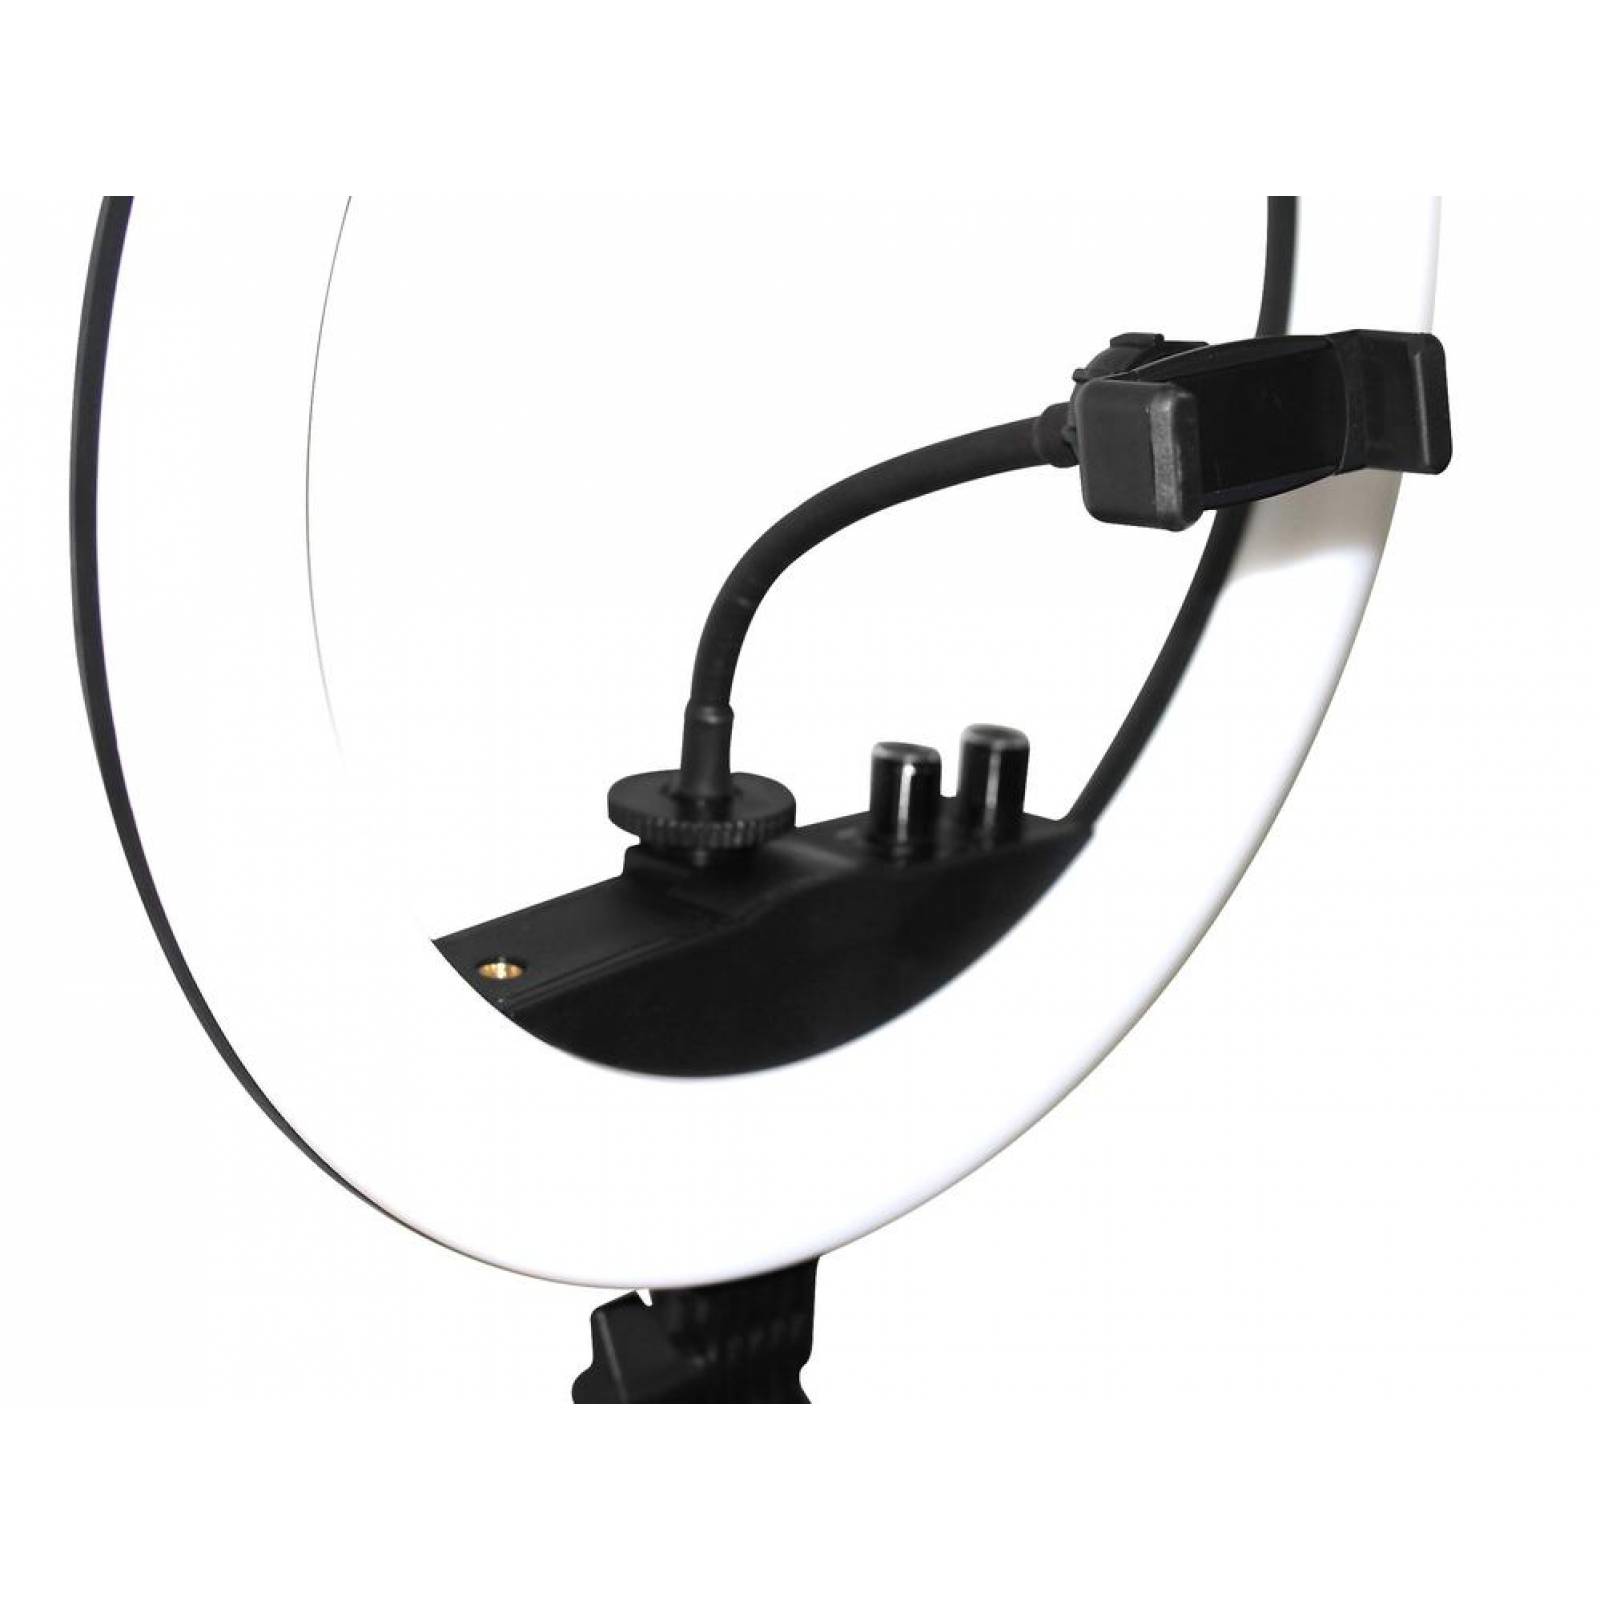 Aro Luz Led 34 cm nueva Tecnología + Control Bluetooth + Tripie ajustable Negro